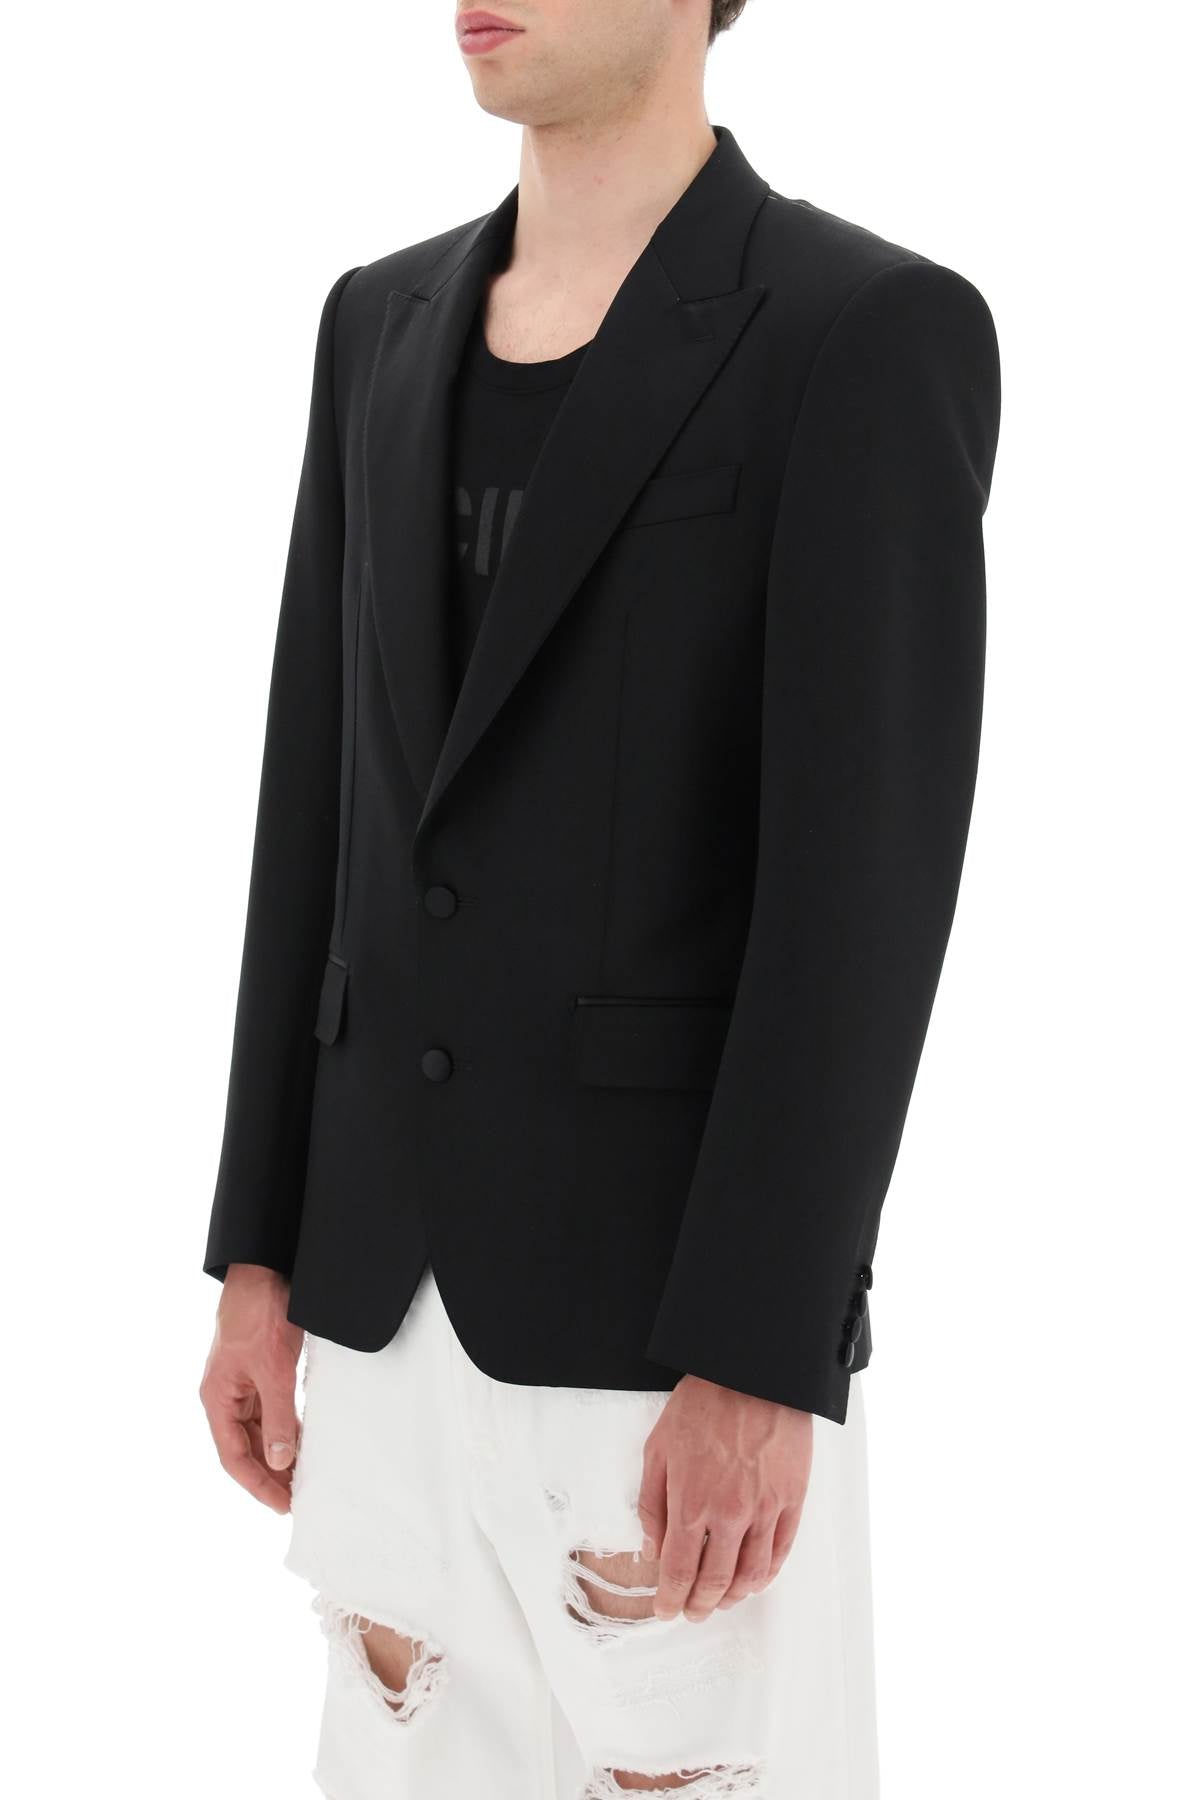 Dolce & gabbana single-breasted tuxedo jacket-3